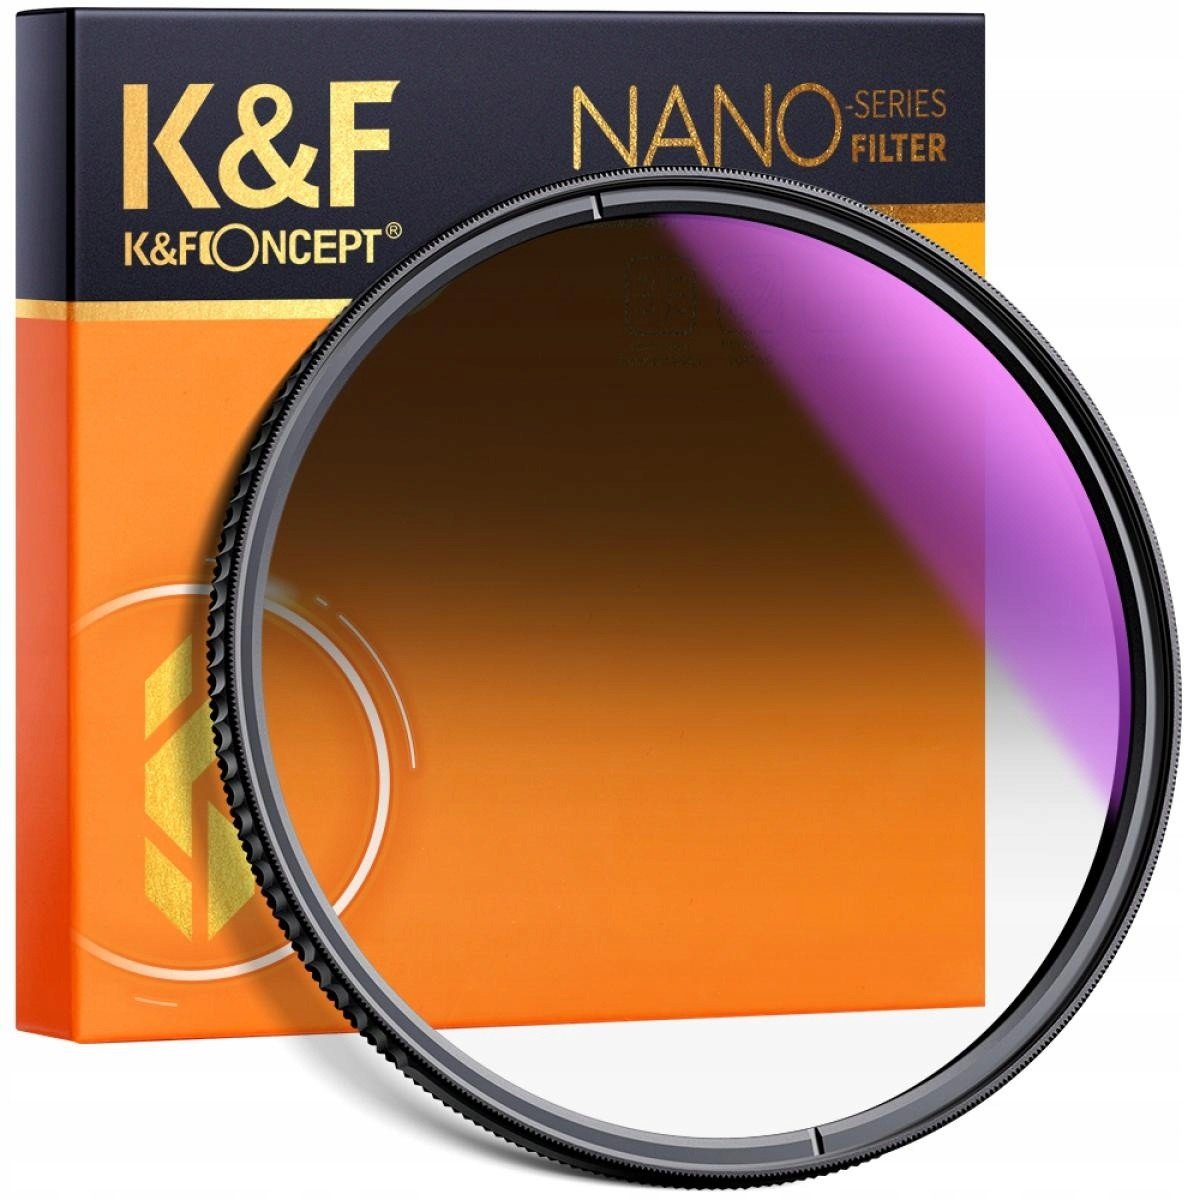 K&f Filtr šedý NanoX GND8 Soft 58mm